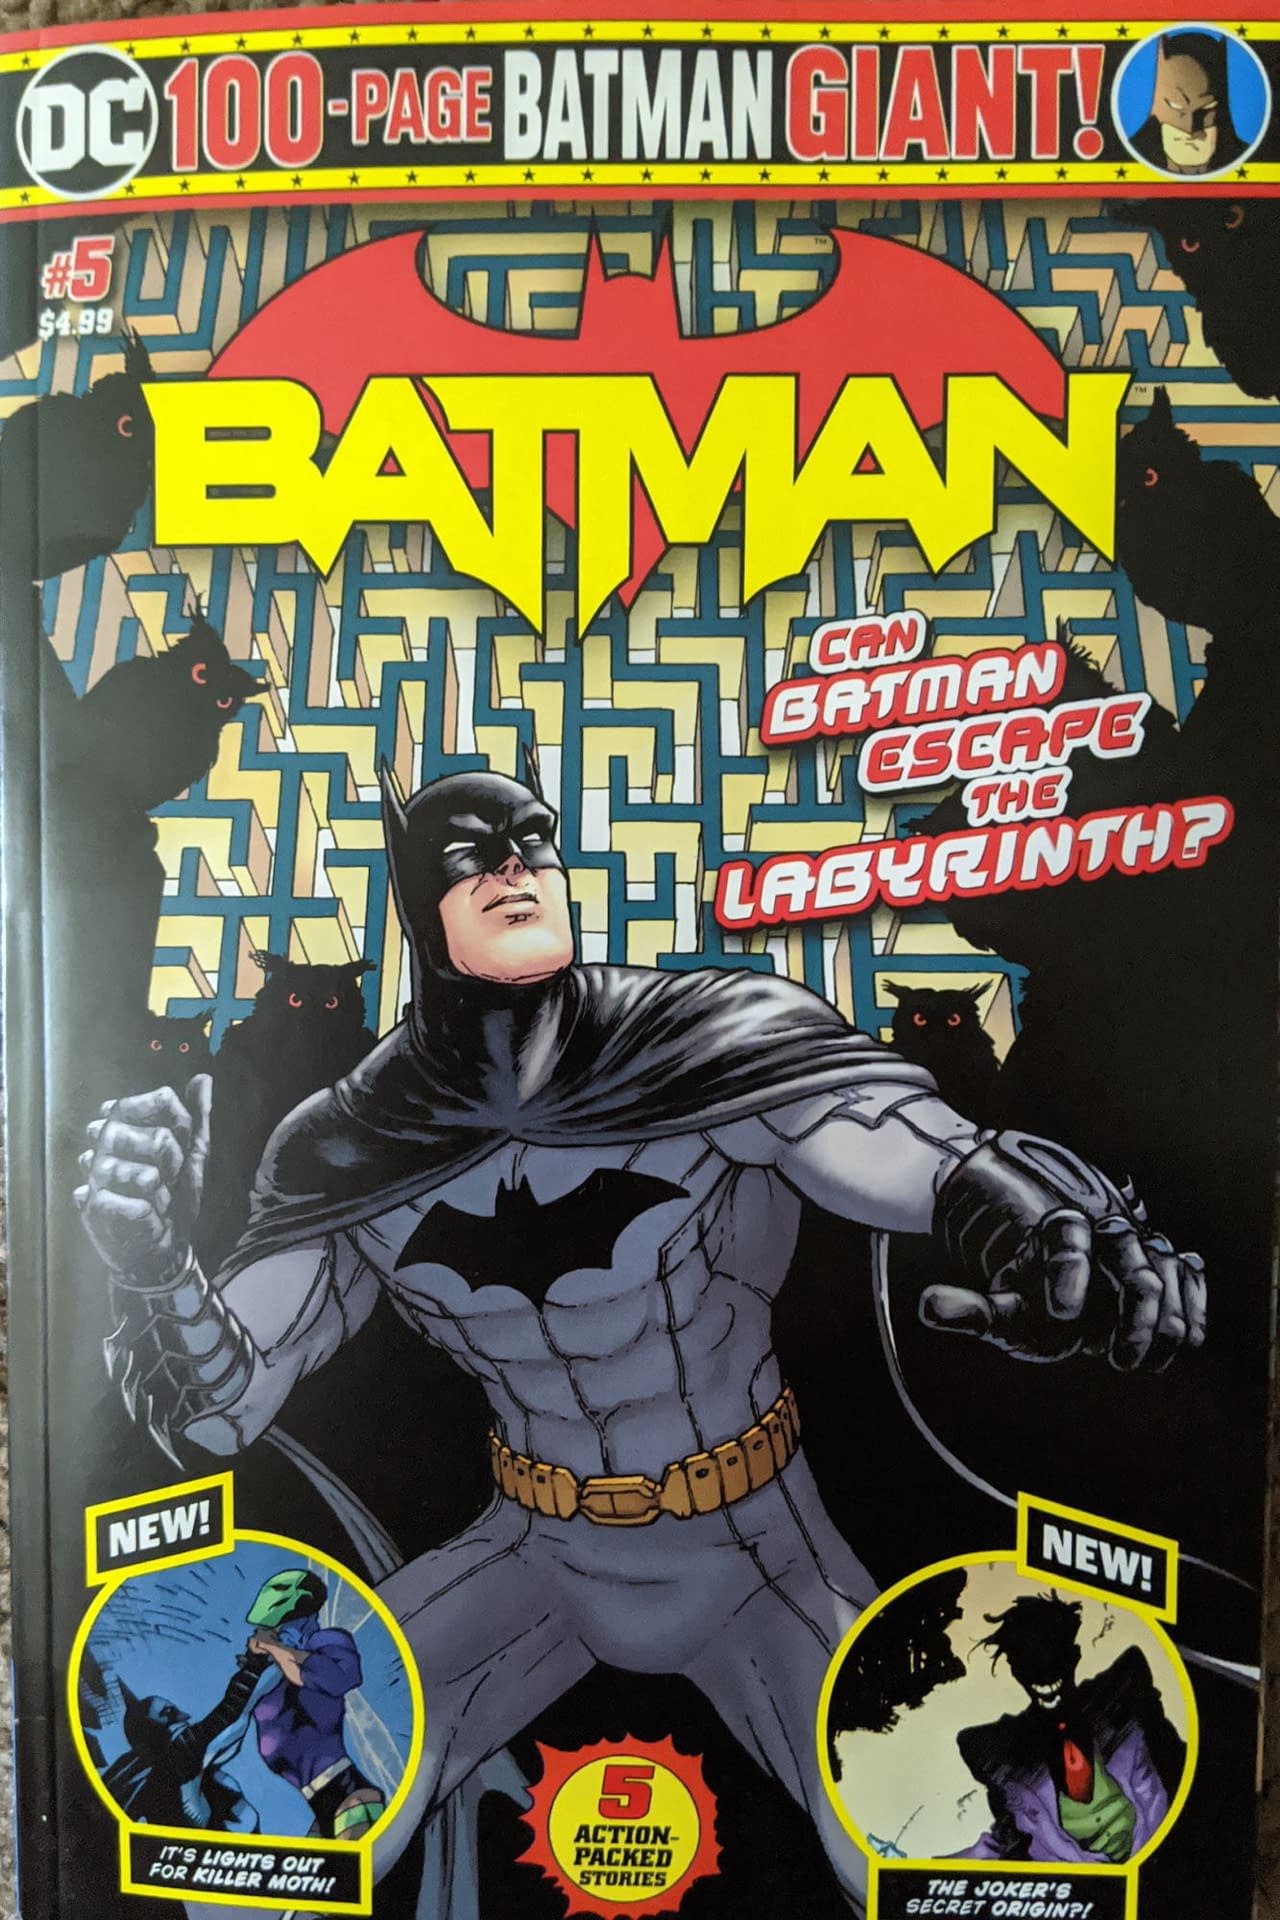 The Joker Gets a New Origin in Batman Giant #5 in Walmart